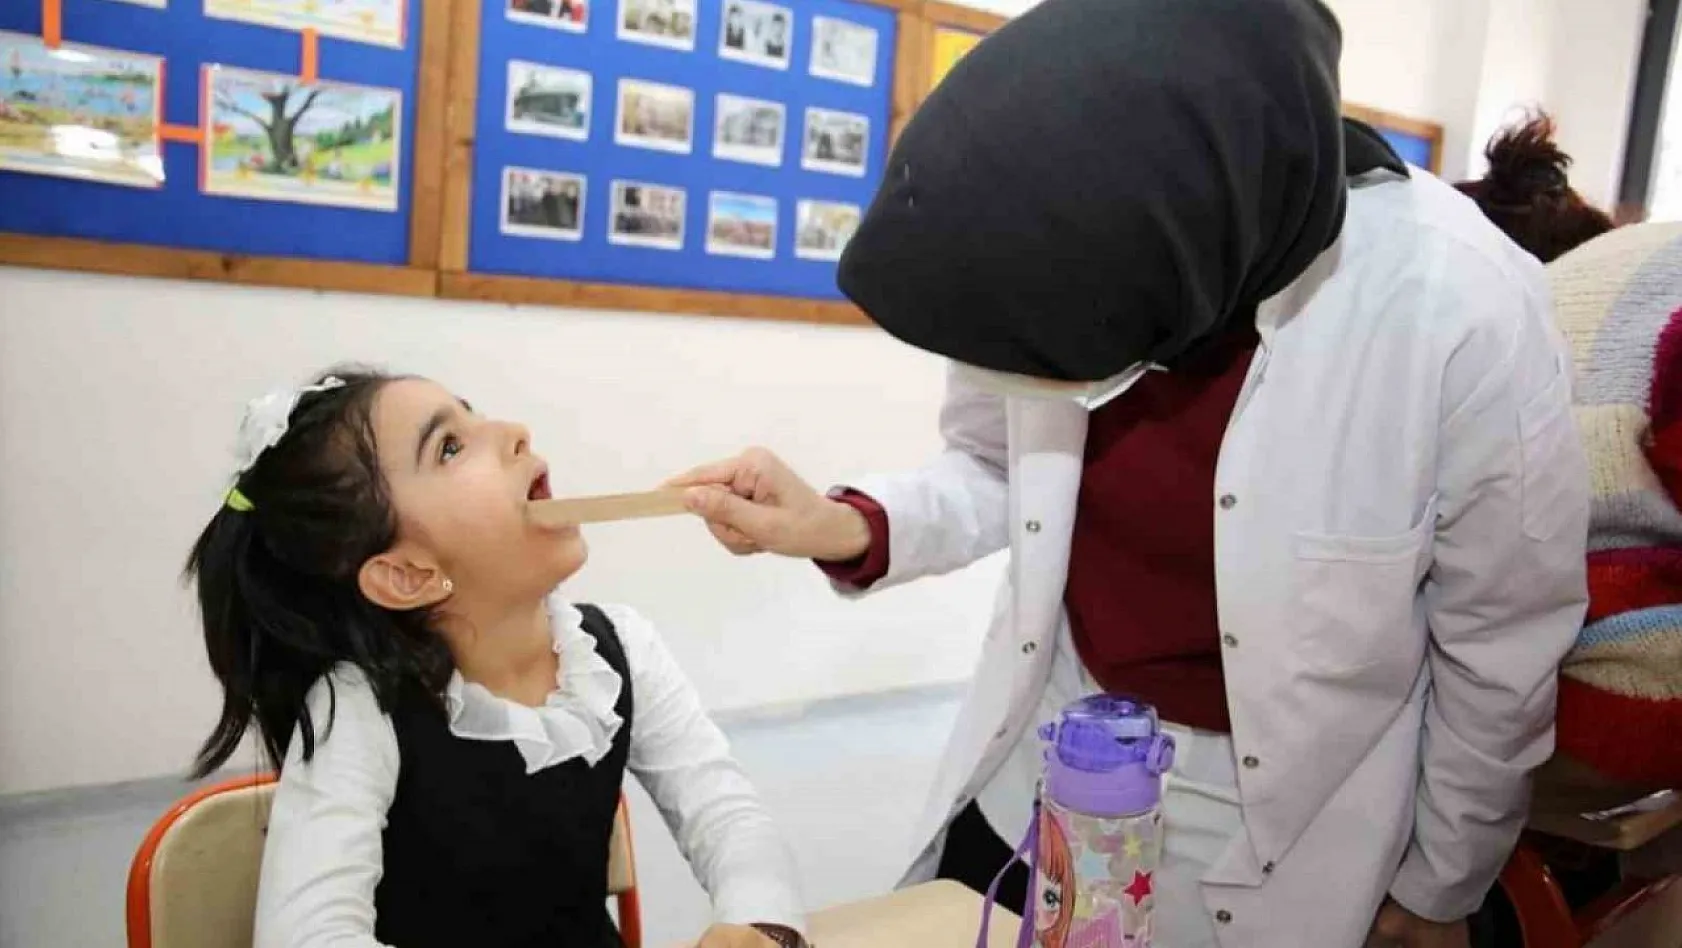 Tunceli'de ağız ve diş sağlığı taramaları başladı